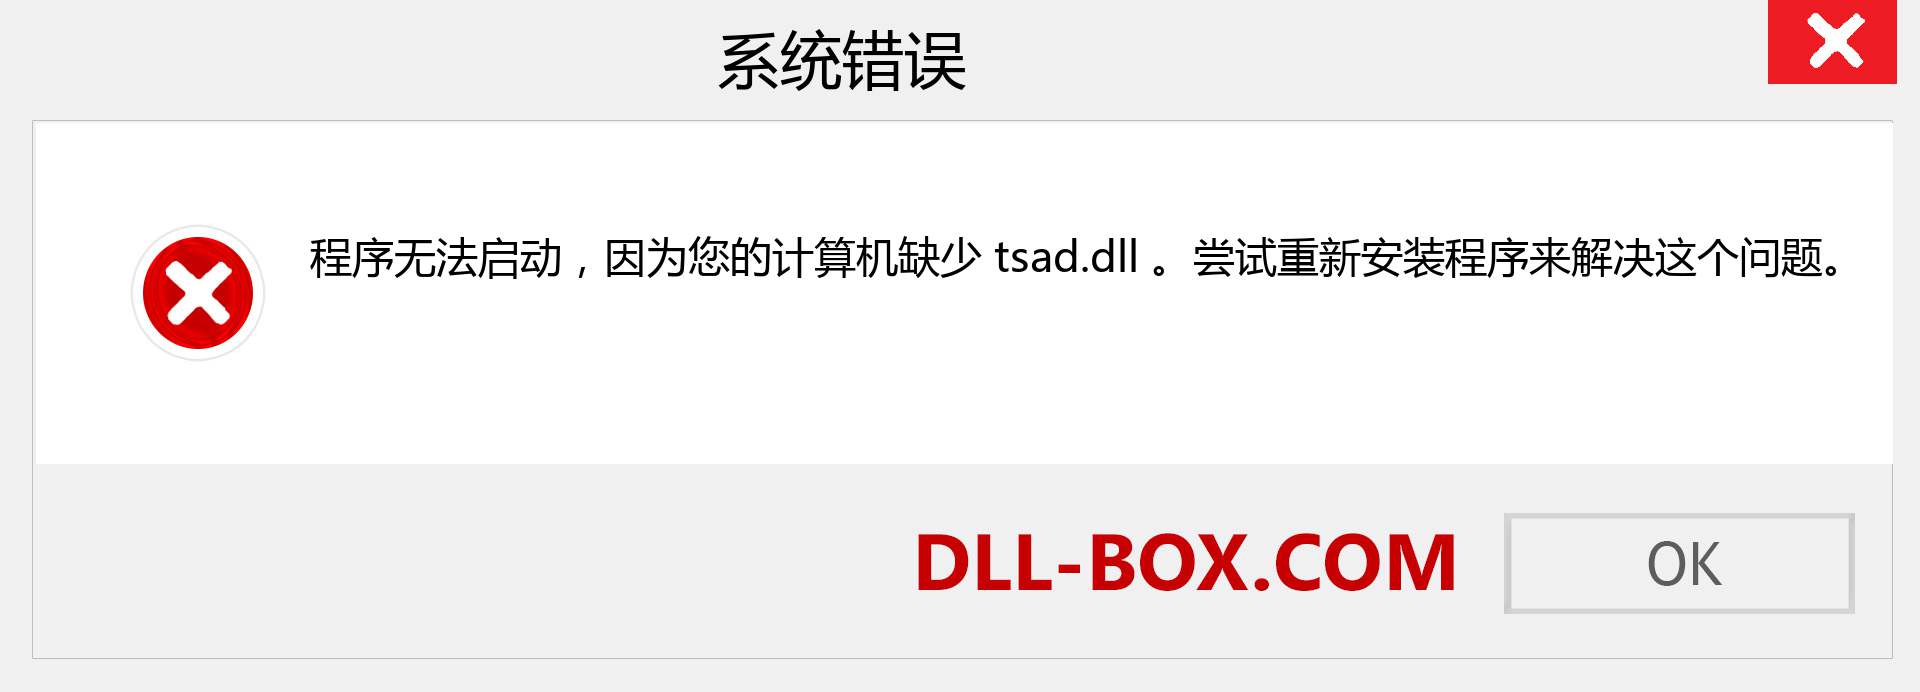 tsad.dll 文件丢失？。 适用于 Windows 7、8、10 的下载 - 修复 Windows、照片、图像上的 tsad dll 丢失错误